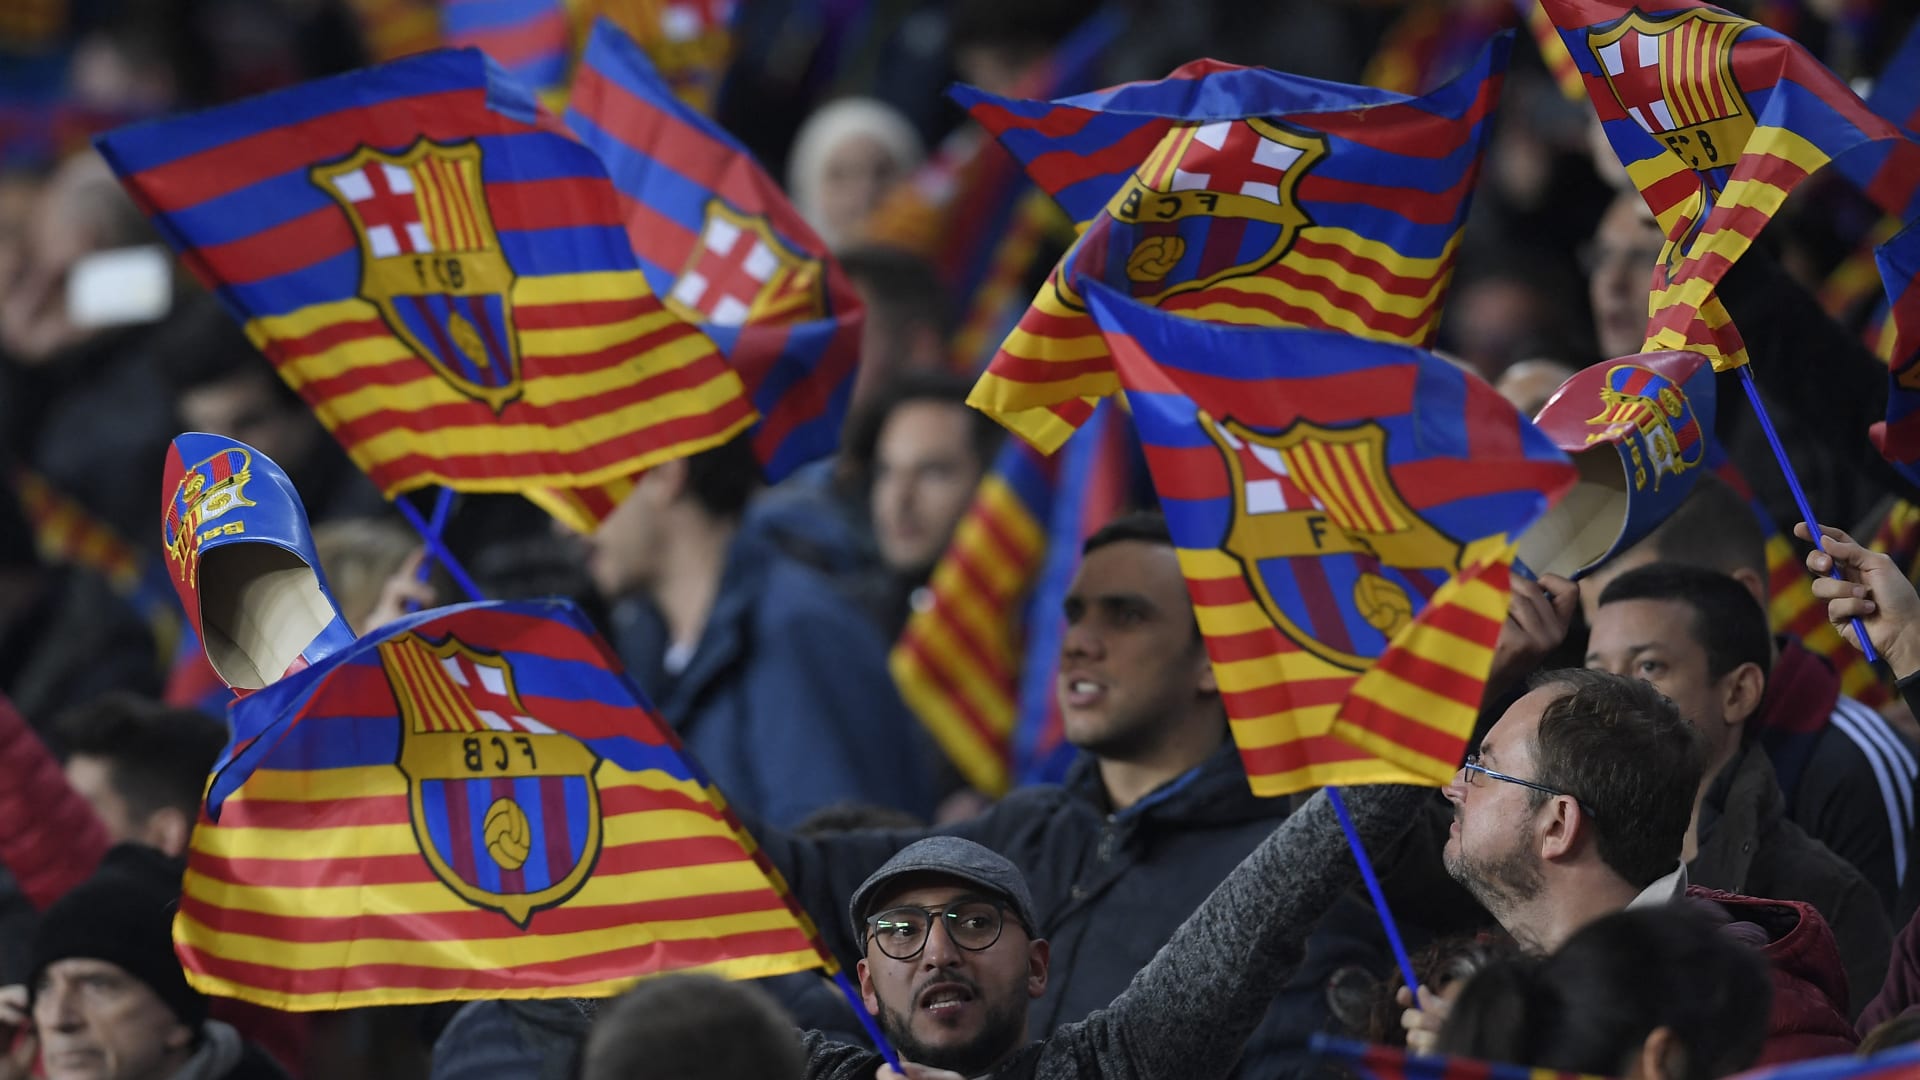 الاتحاد الأوروبي لكرة القدم يفتح تحقيقاً في مزاعم "دفع أموال مشبوهة للحكام" من قِبل برشلونة